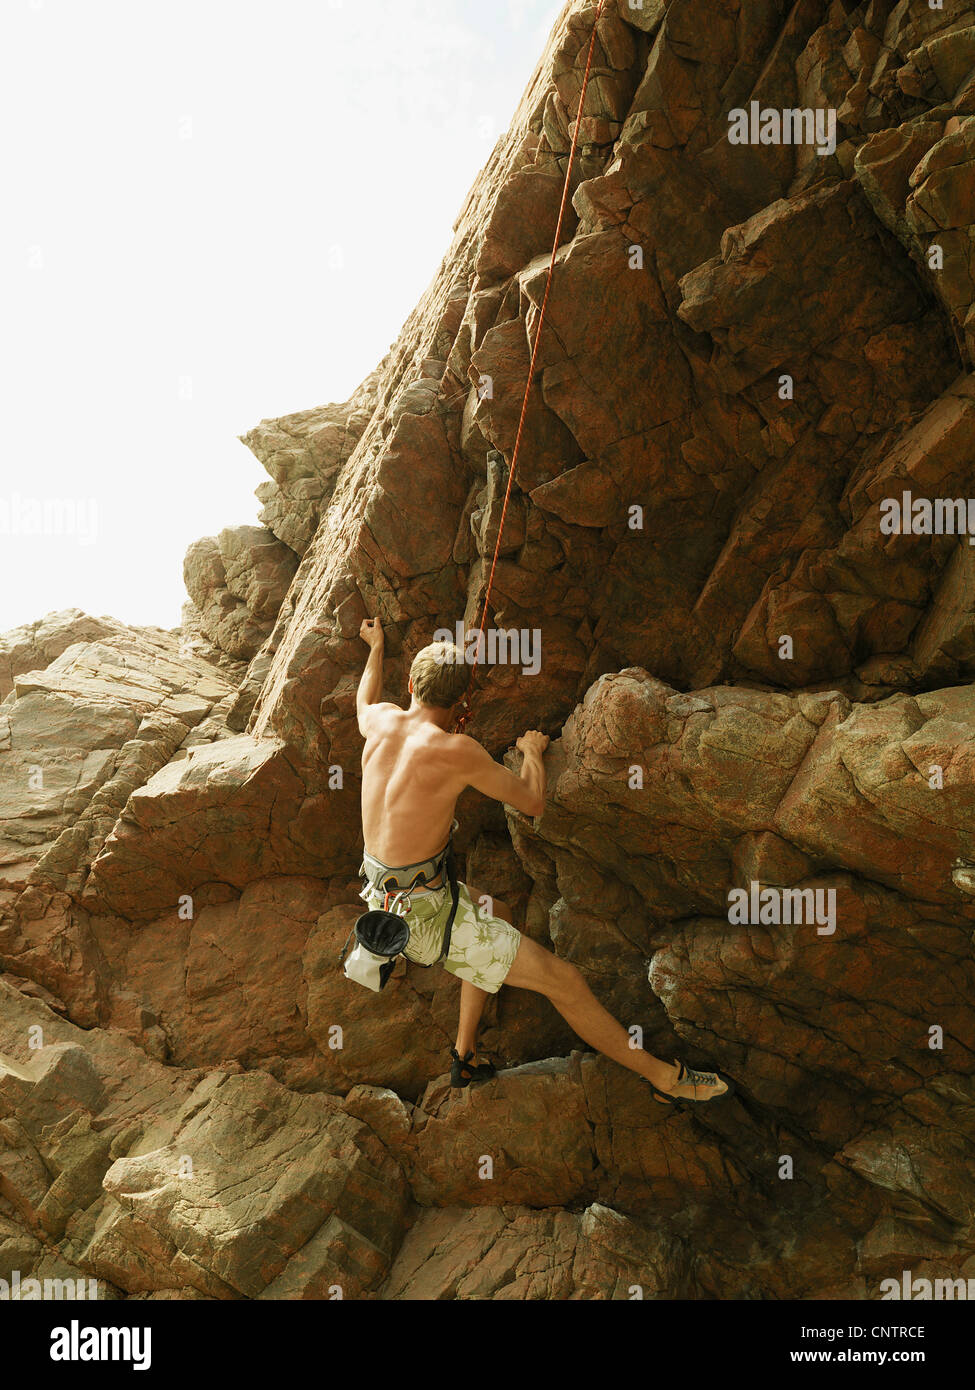 Rock climber scaling steep rock face Stock Photo